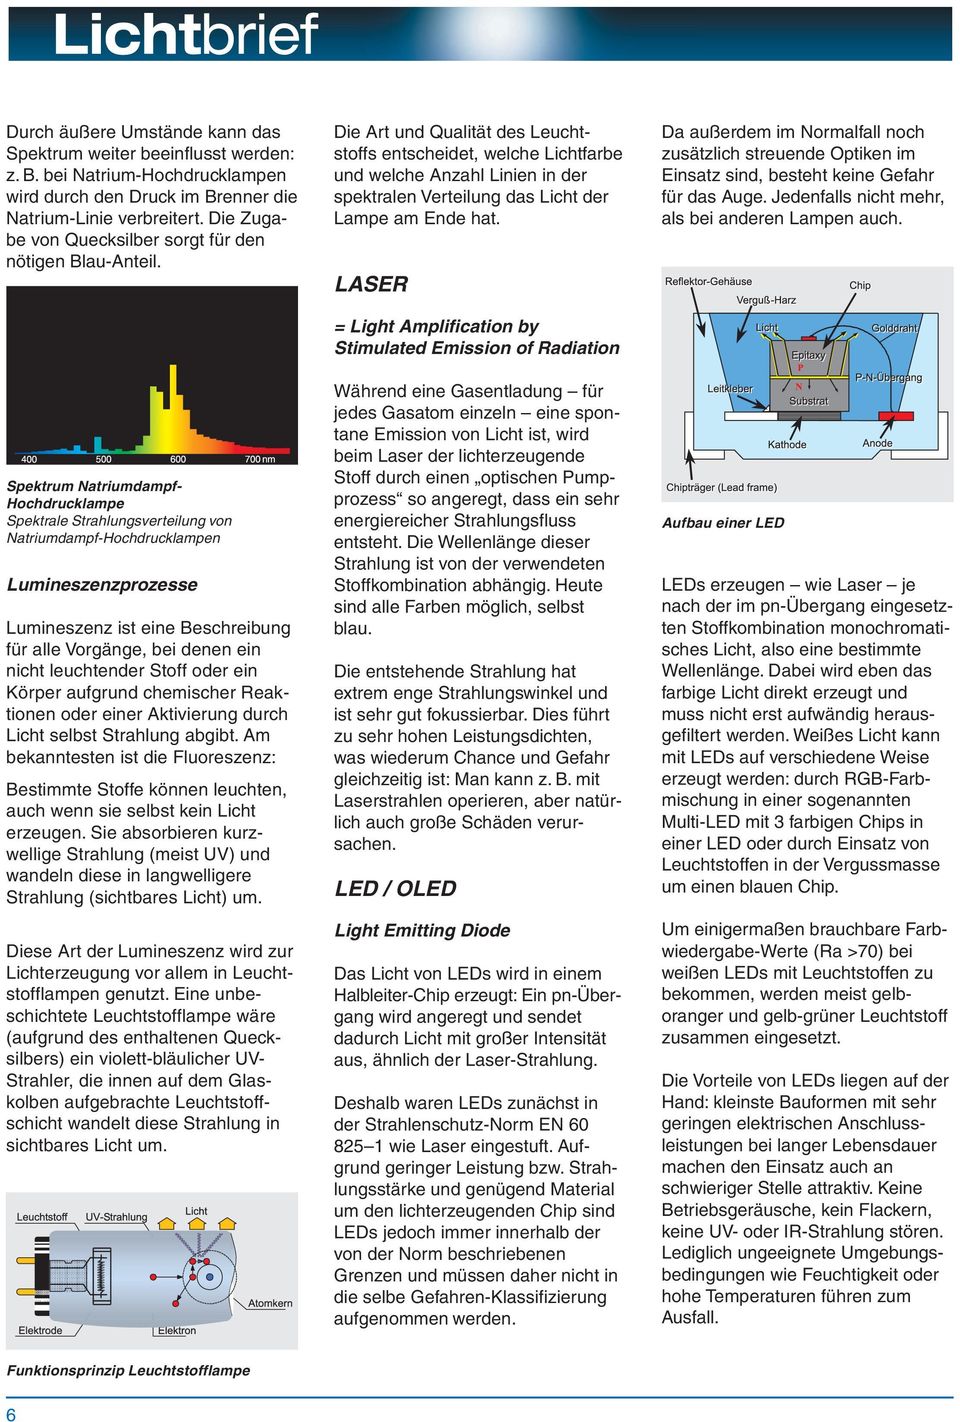 Spektrum Natriumdampf- Hochdrucklampe Spektrale Strahlungsverteilung von Natriumdampf-Hochdrucklampen Lumineszenzprozesse Lumineszenz ist eine Beschreibung für alle Vorgänge, bei denen ein nicht